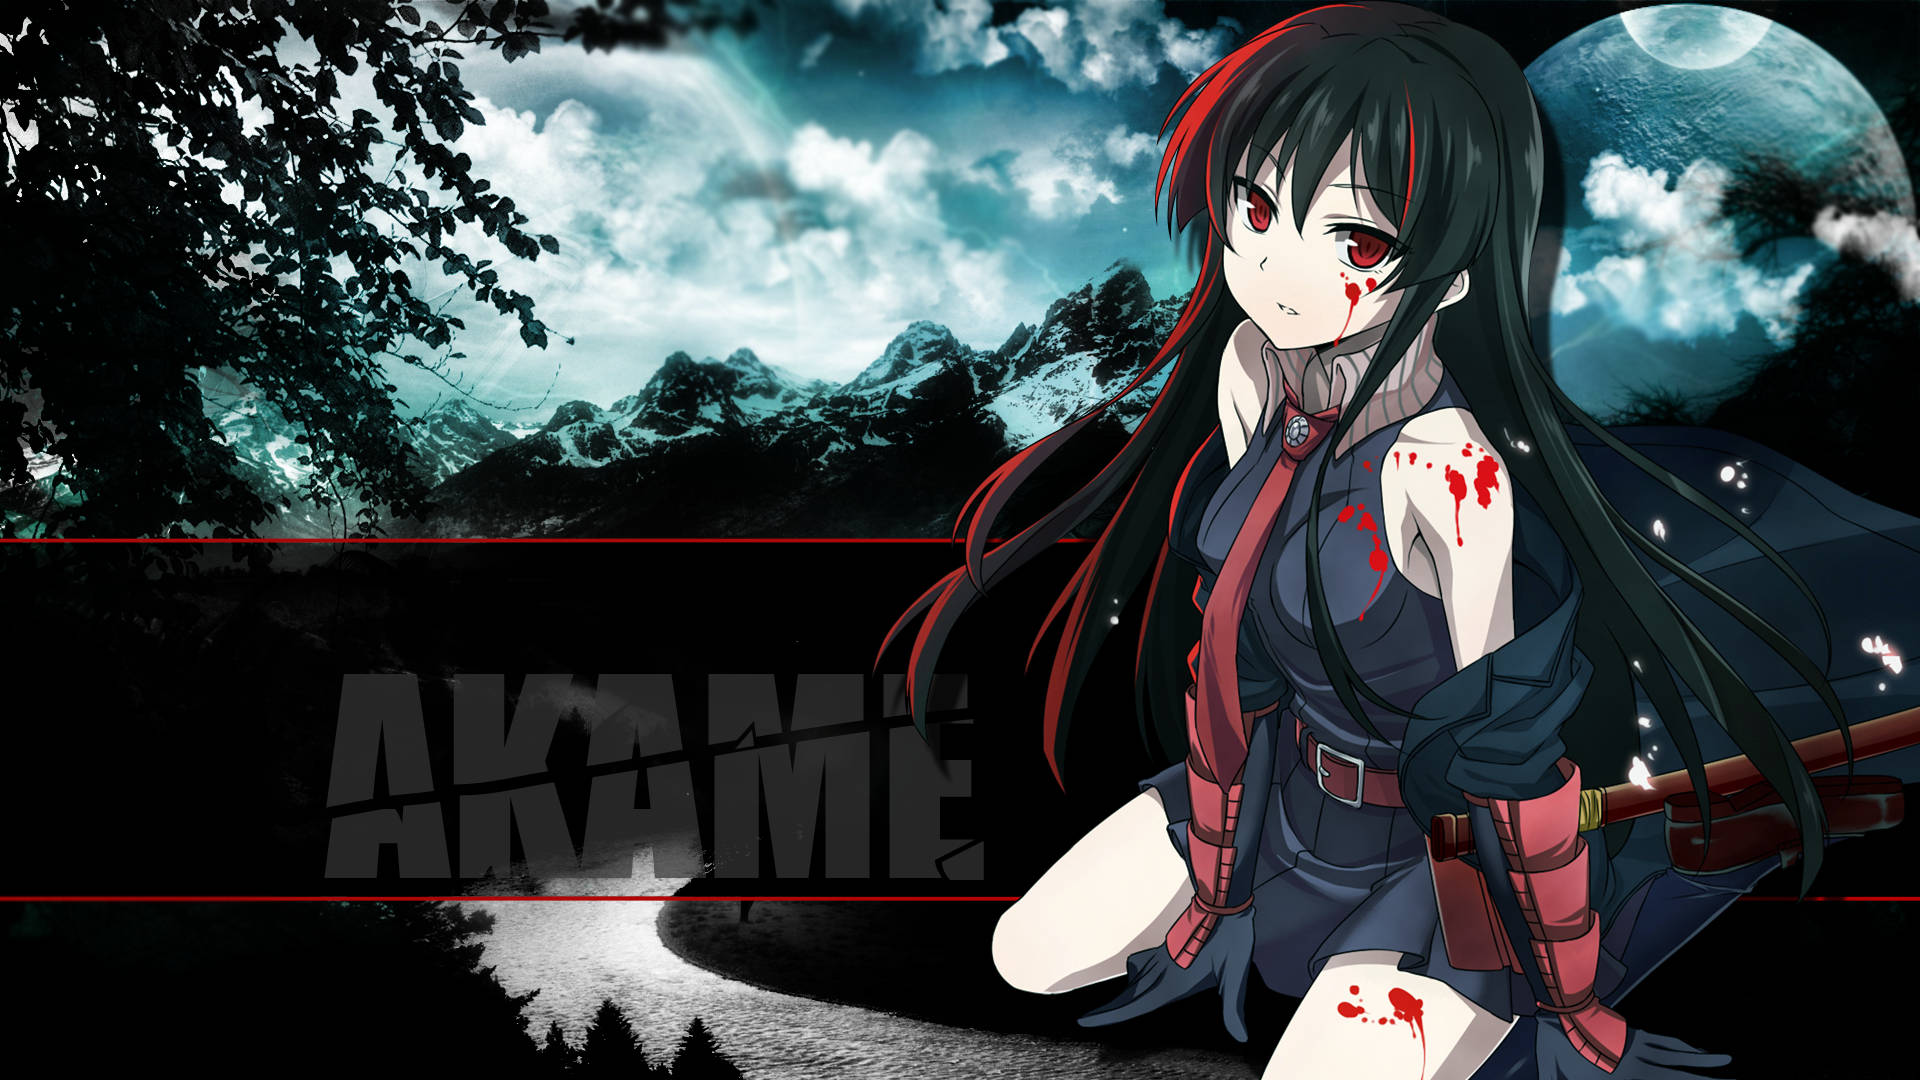 “Challenge the world with Akame Ga Kill!